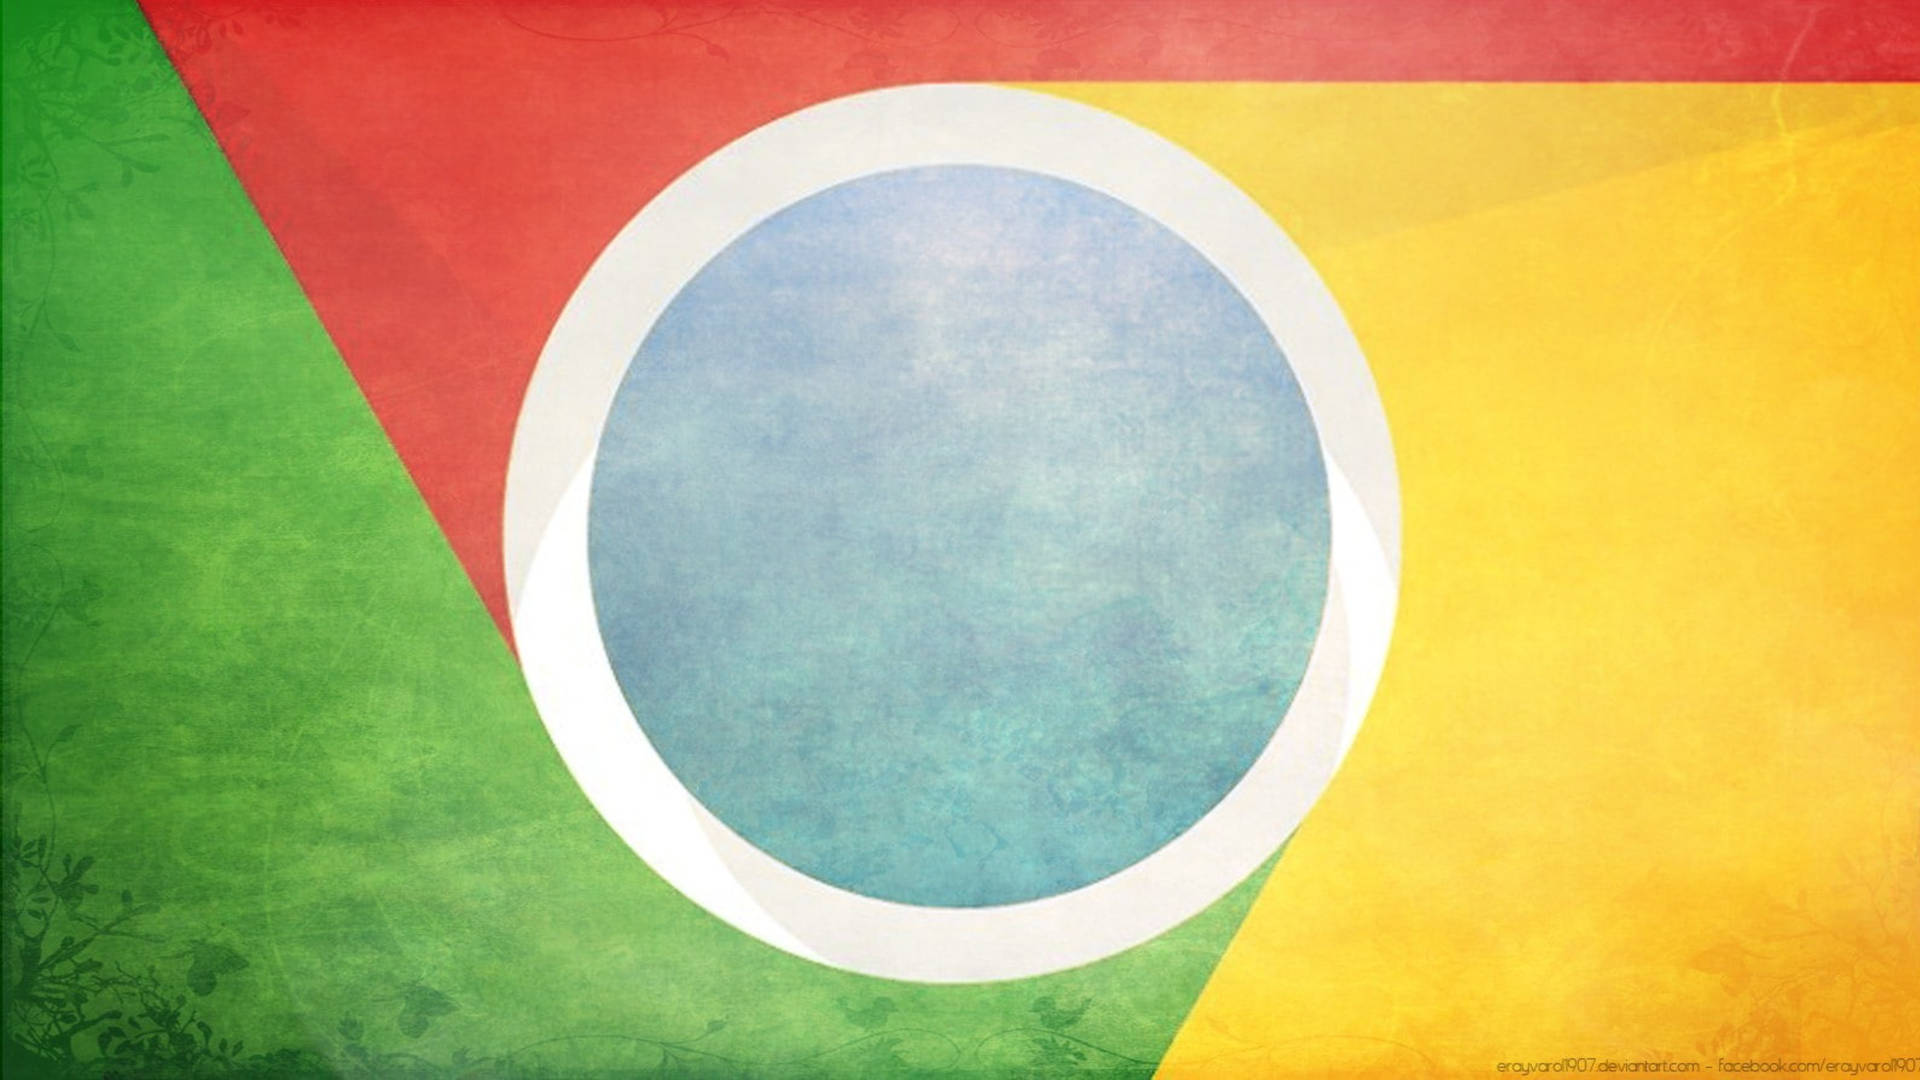 Retro-themed Google Chrome